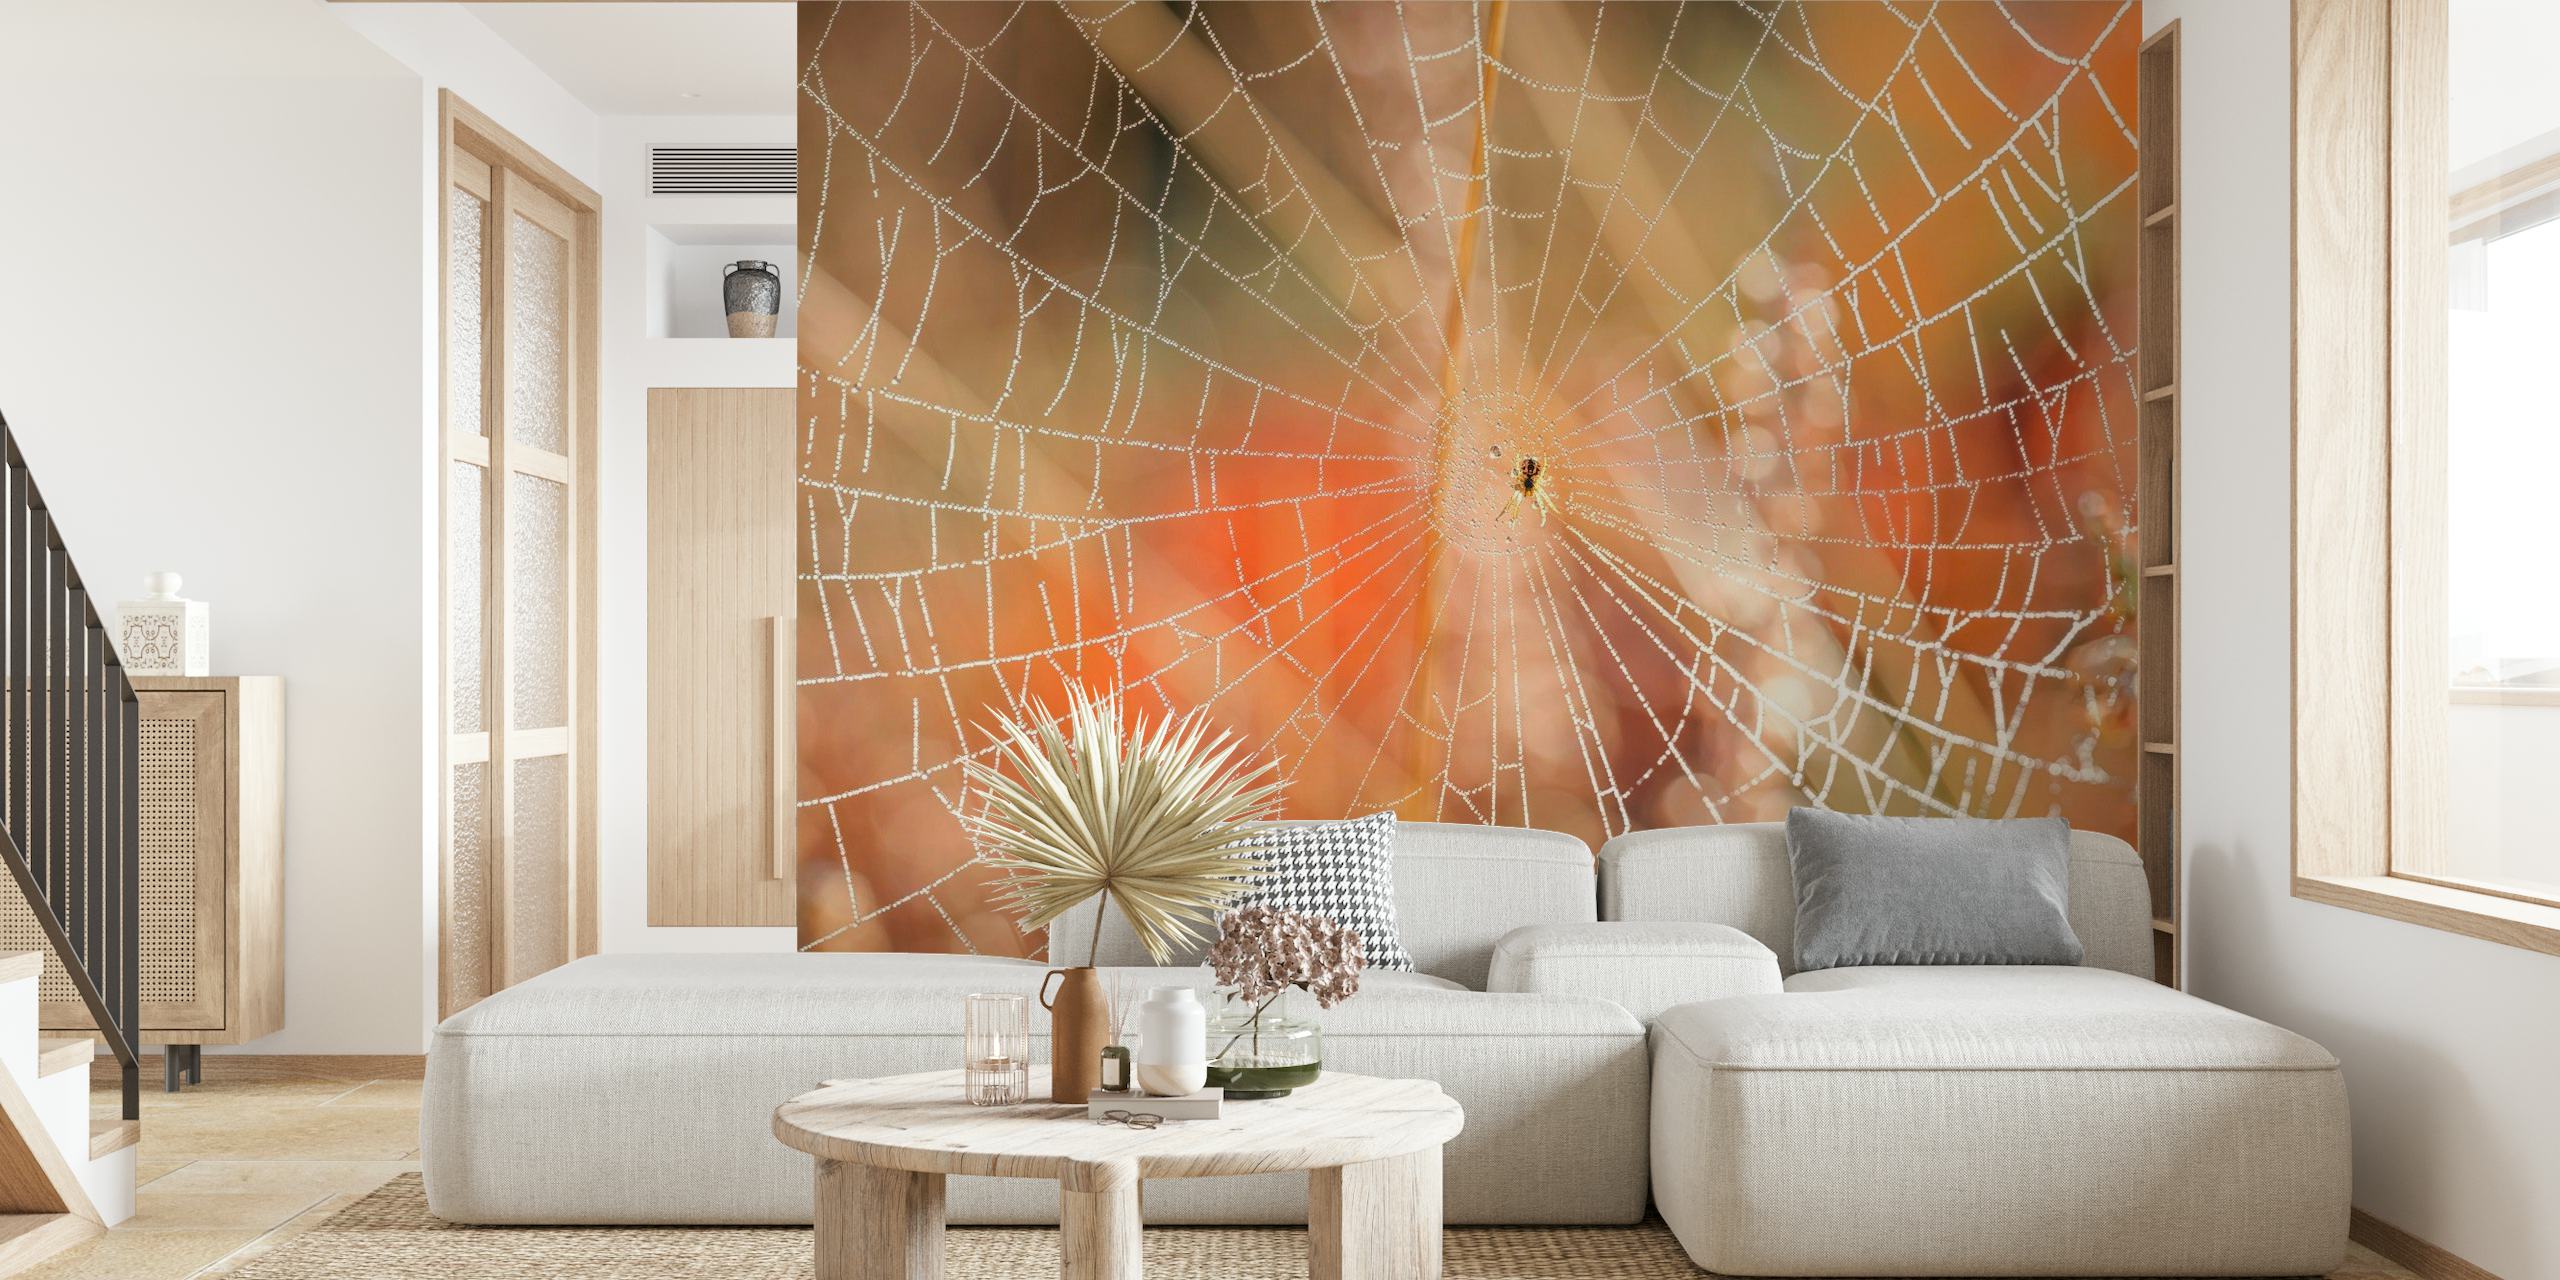 Zamršena zidna slika u obliku paukove mreže s jutarnjom rosom